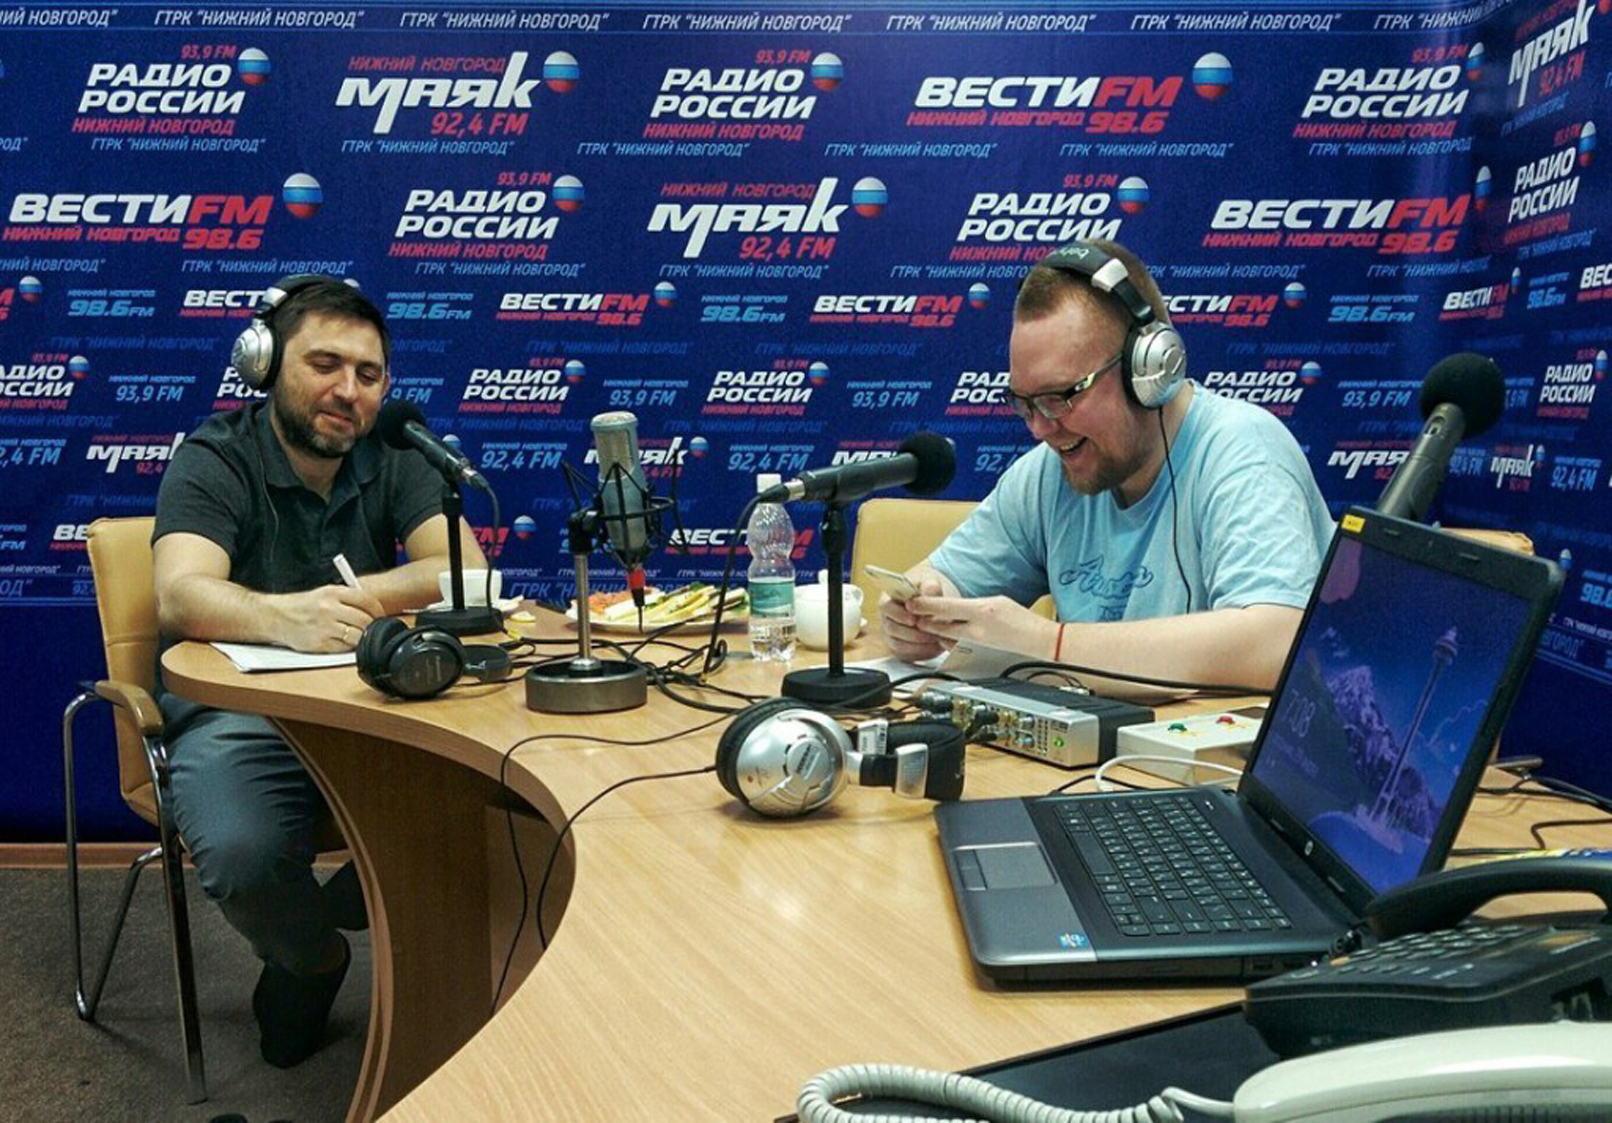 Радио россии сейчас в эфире